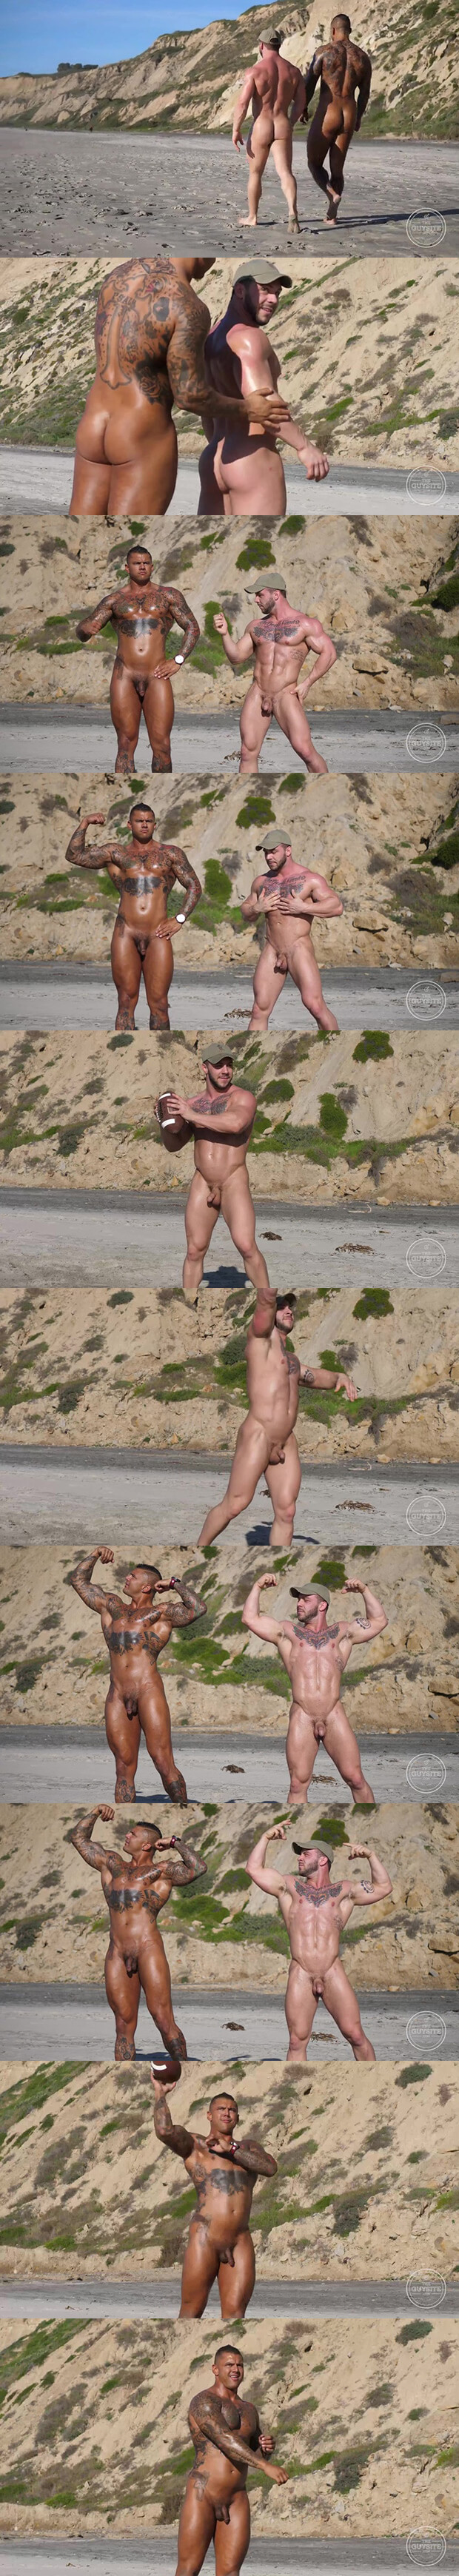 The Guy Site | Muscle Men Nude Beach (Bane Diesel & Seth)